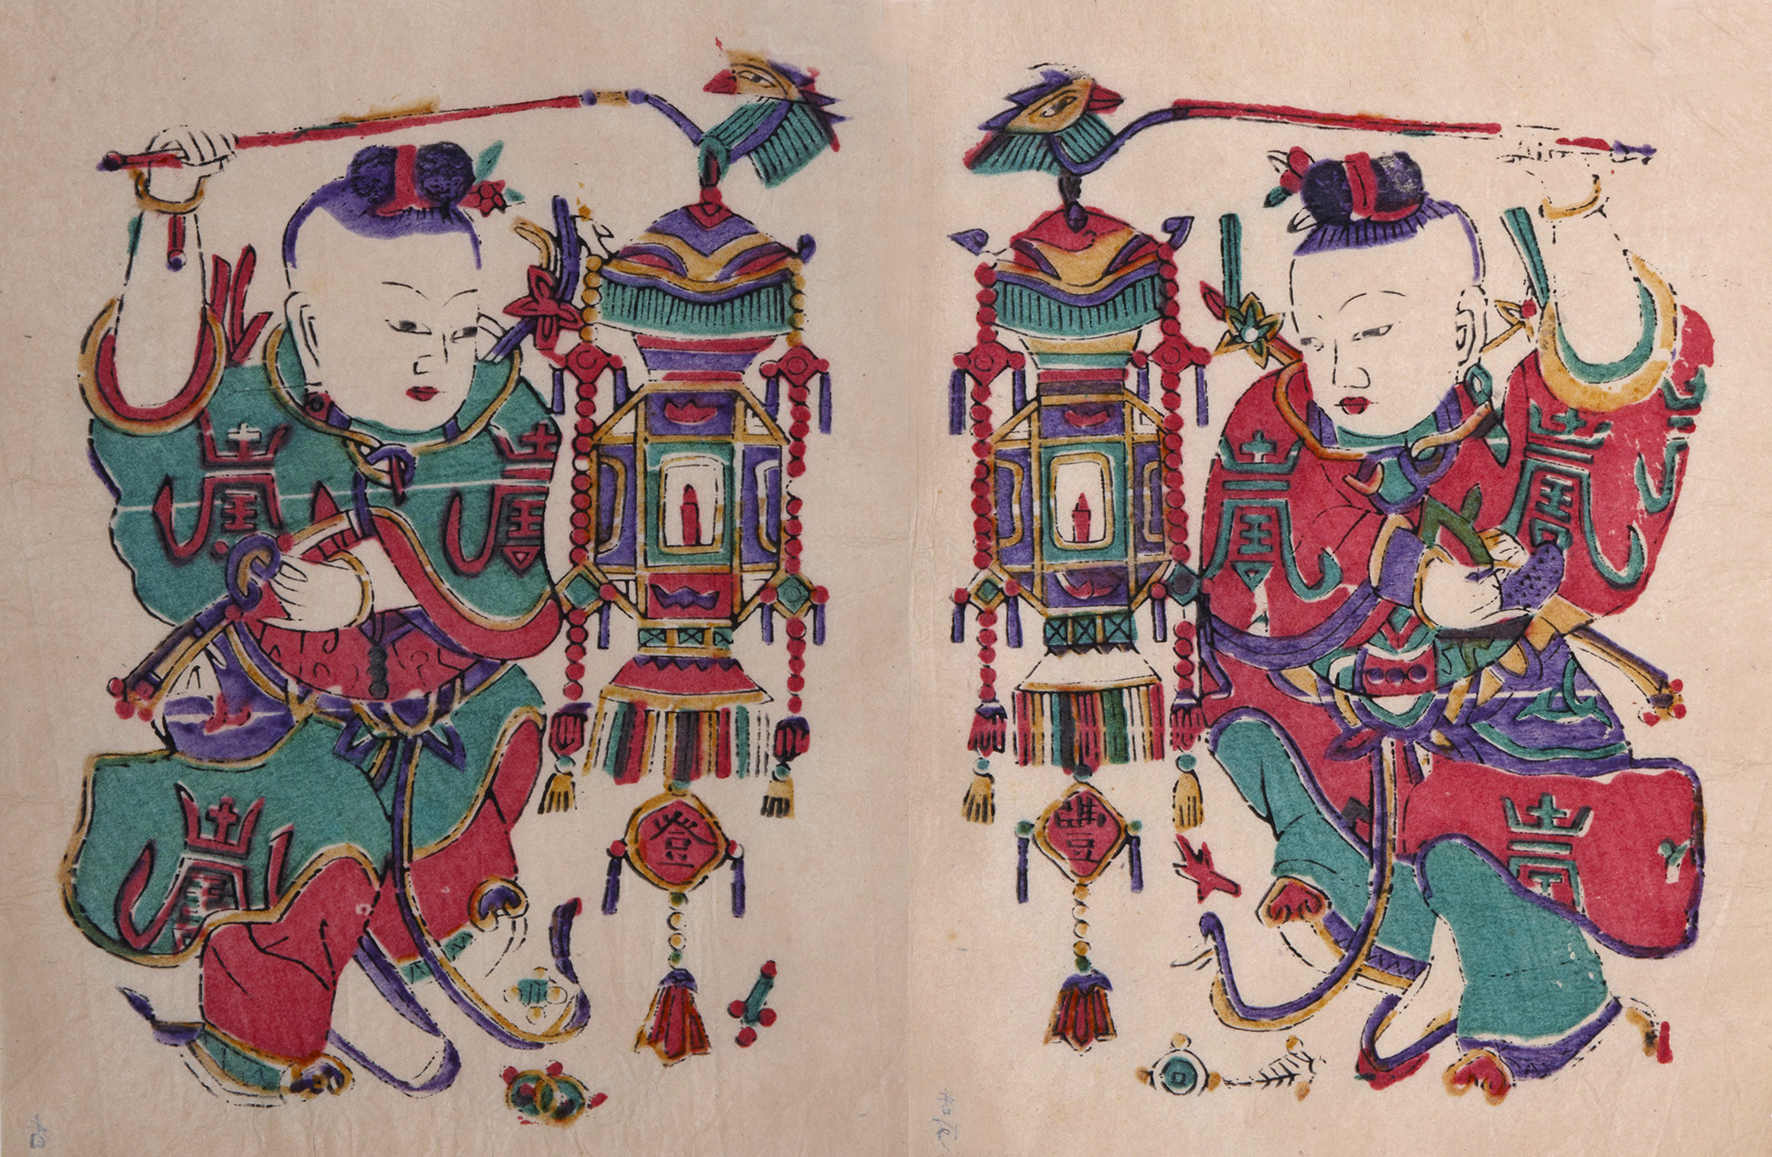 年画之美北京民俗版画中的文武门神戏曲人物等